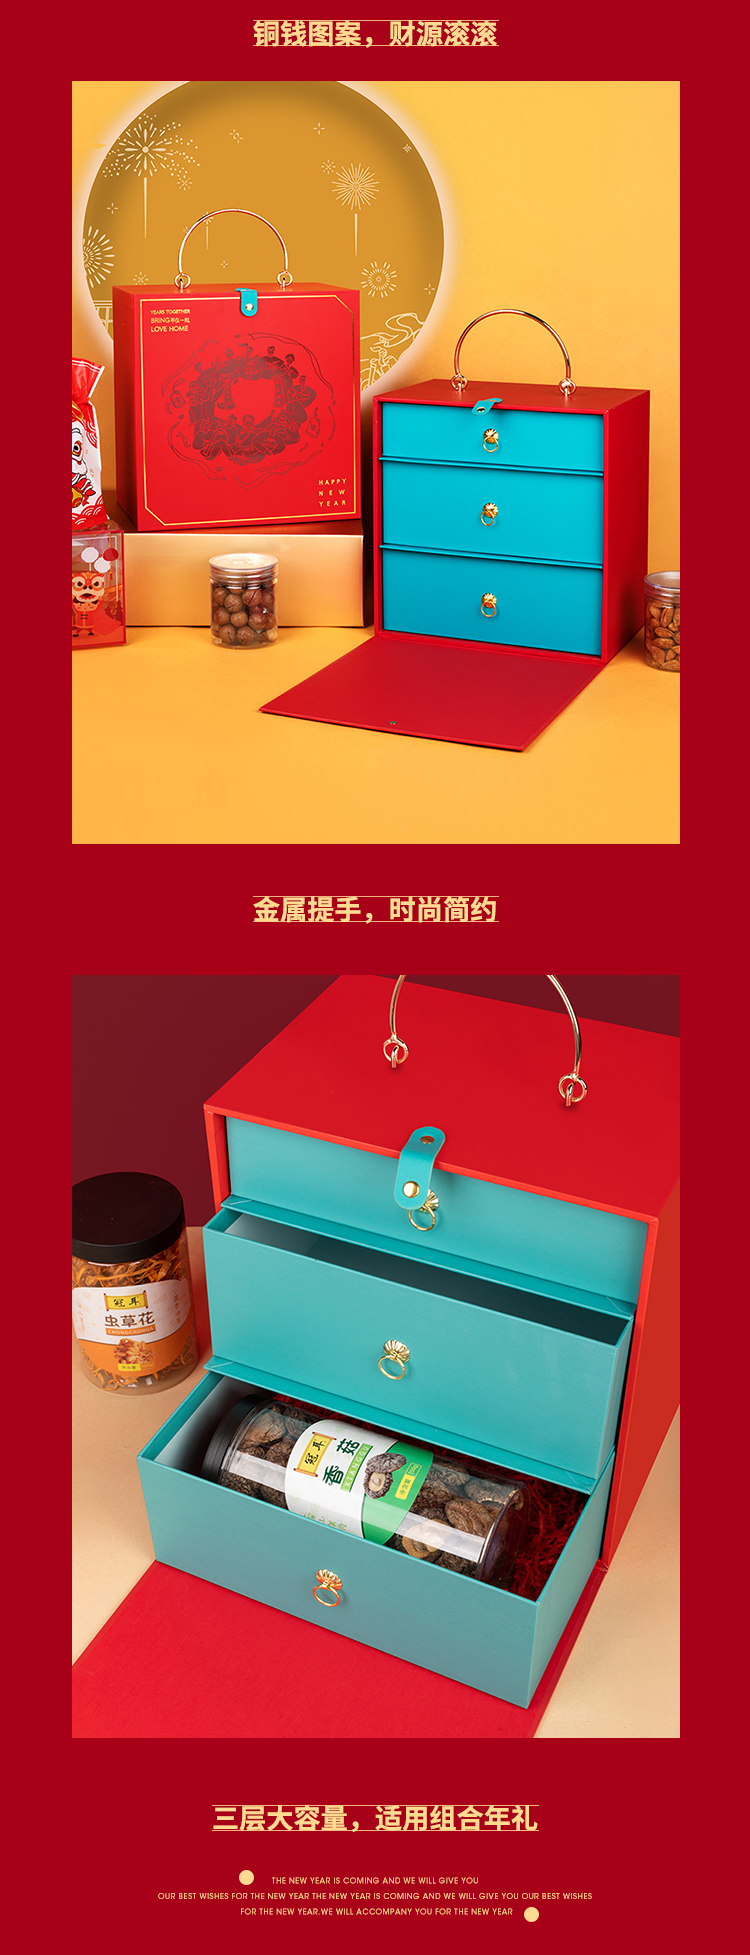 【方森园】新年年货礼盒包装设计——《年在一起》 